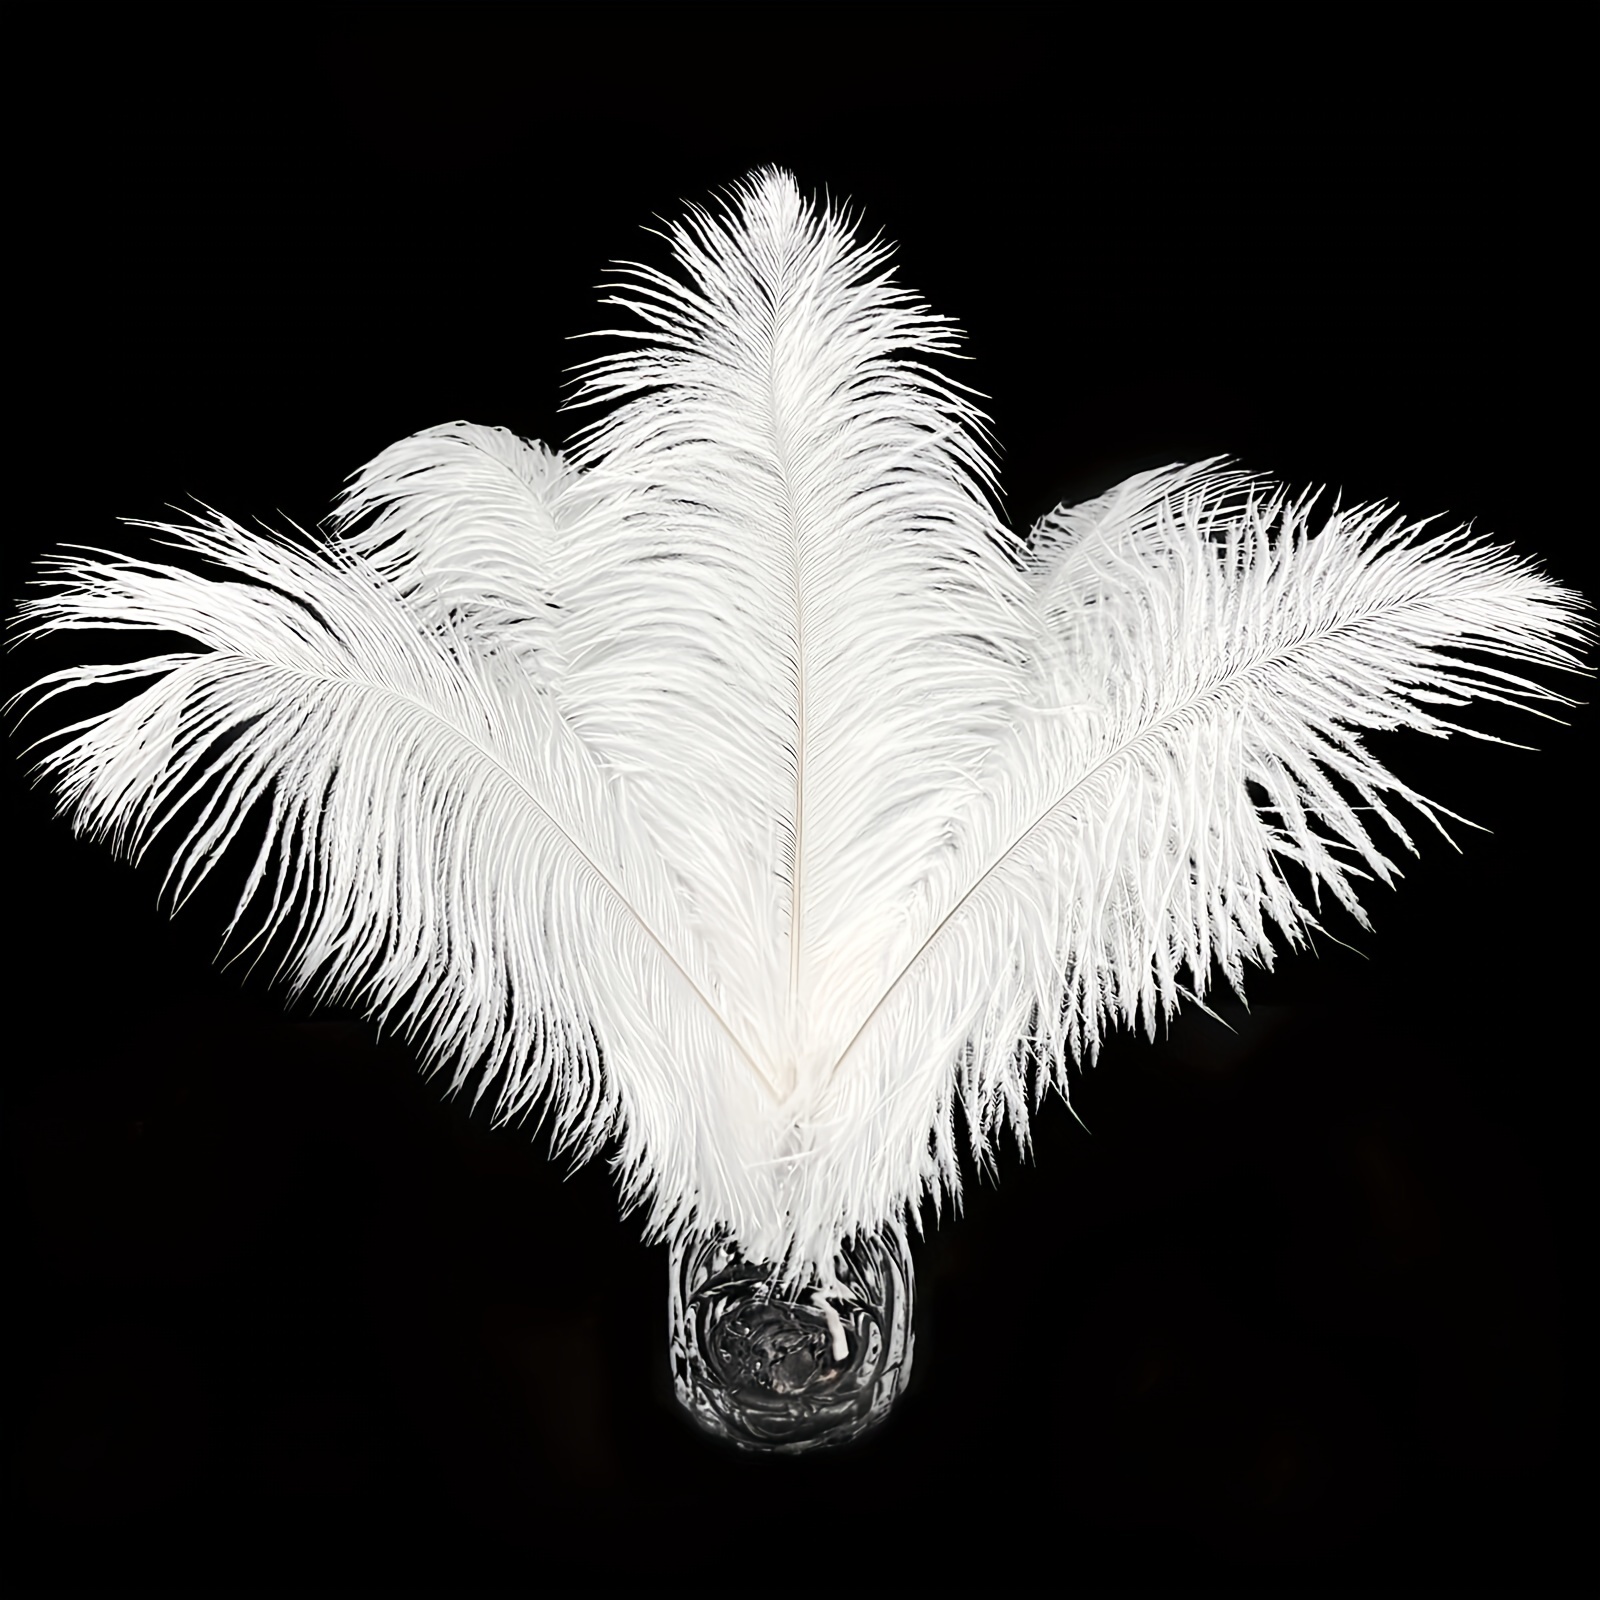 100 plumas blancas para manualidades, plumas de gallo, plumas de faisán de  5 a 7 pulgadas, plumas para joyería, aretes, hacer atrapasueños, decoración